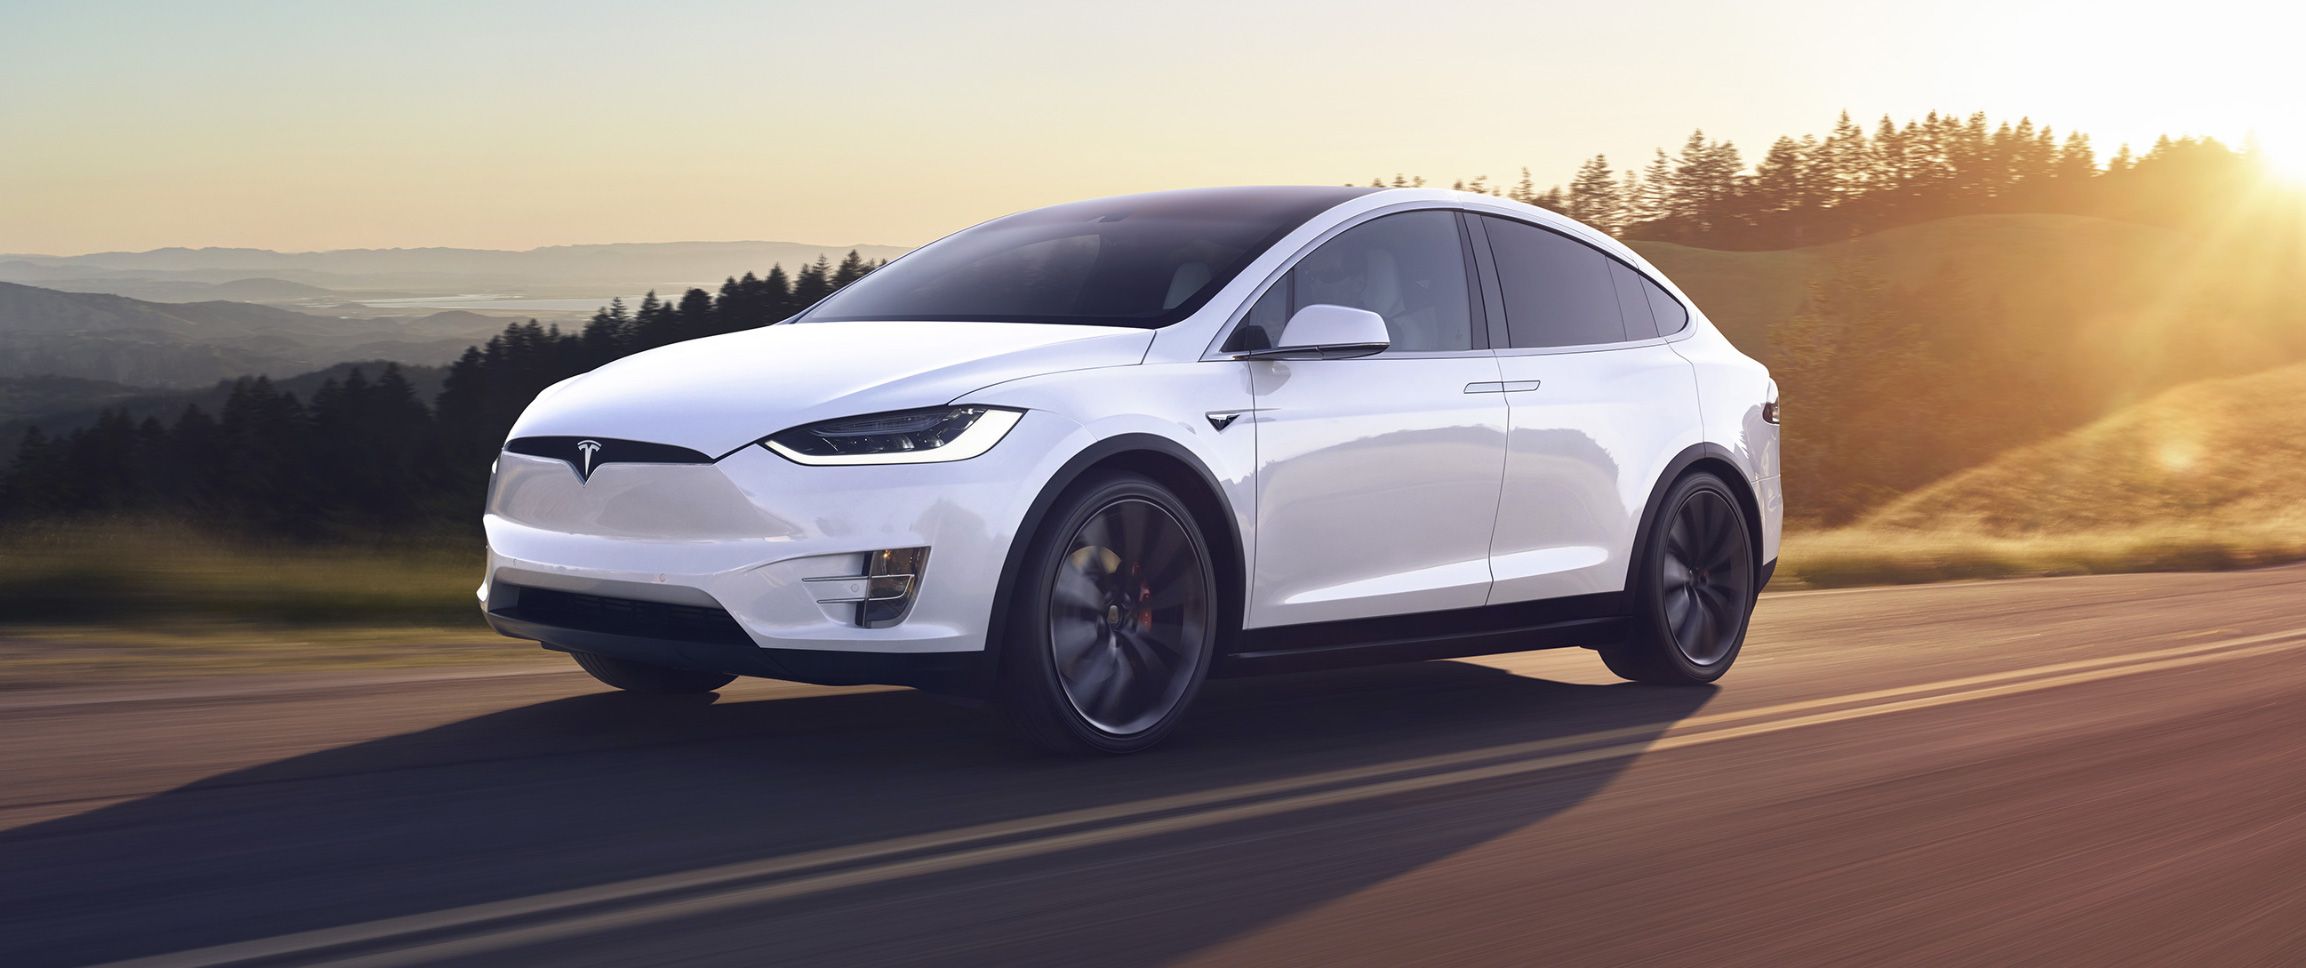 trui Onzuiver Leeg de prullenbak 2020 Tesla Model X Review, Pricing, and Specs